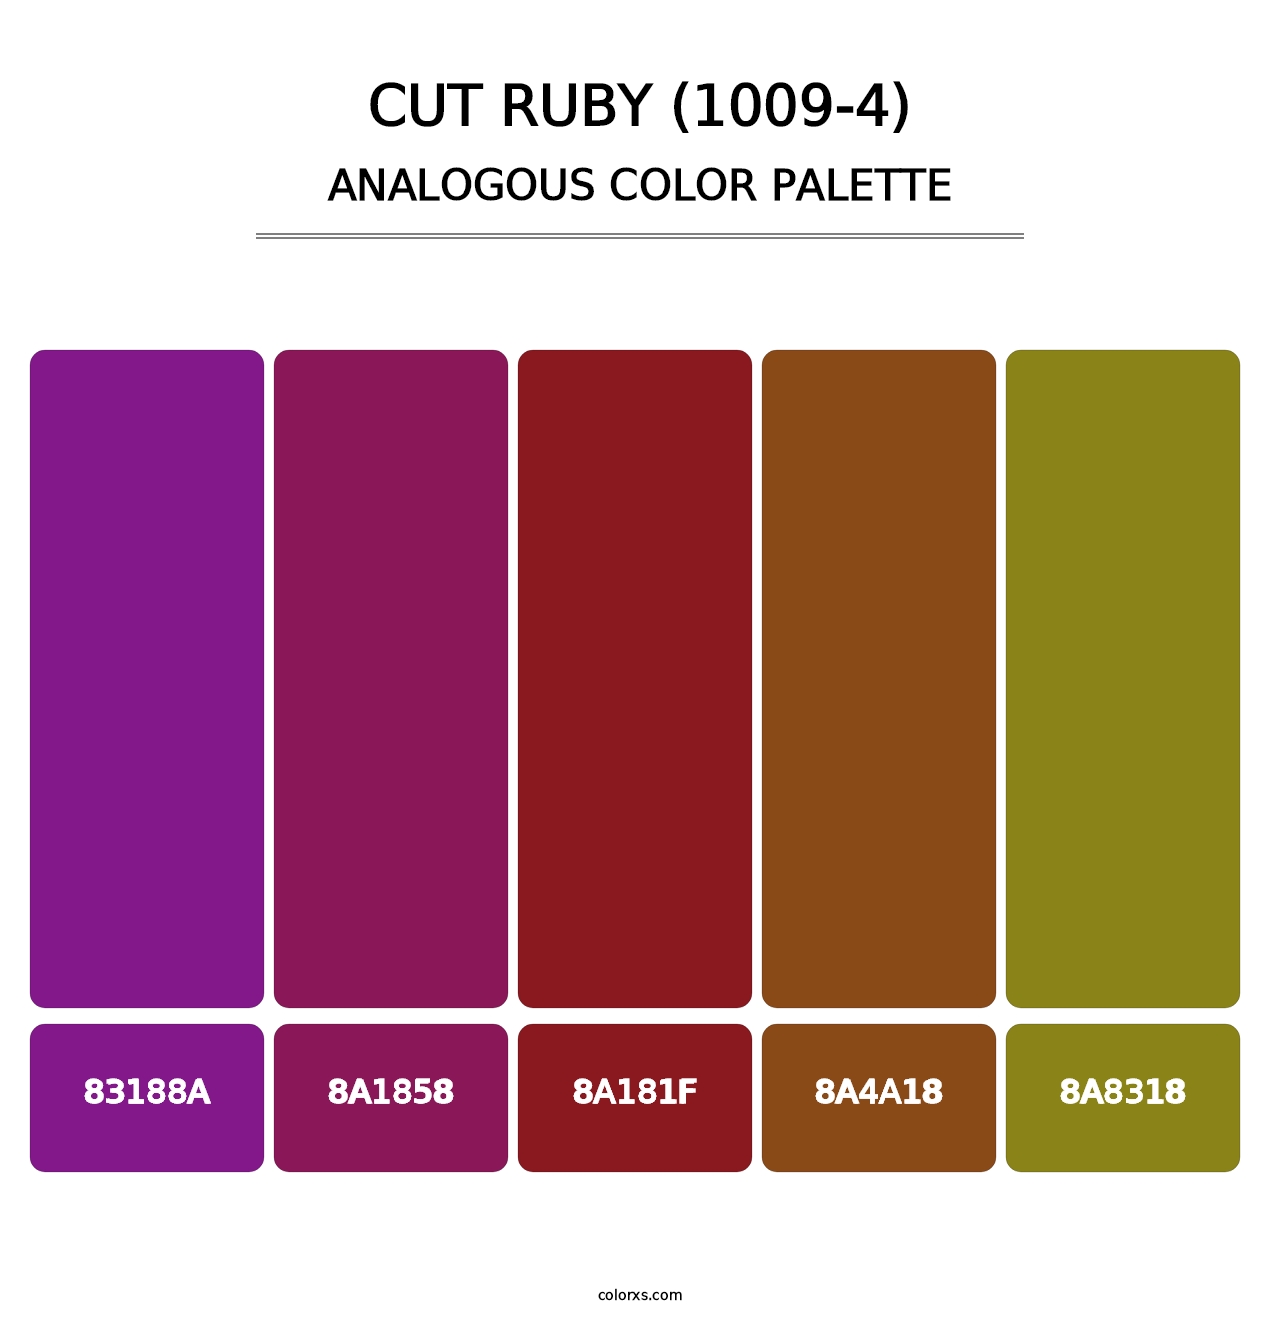 Cut Ruby (1009-4) - Analogous Color Palette